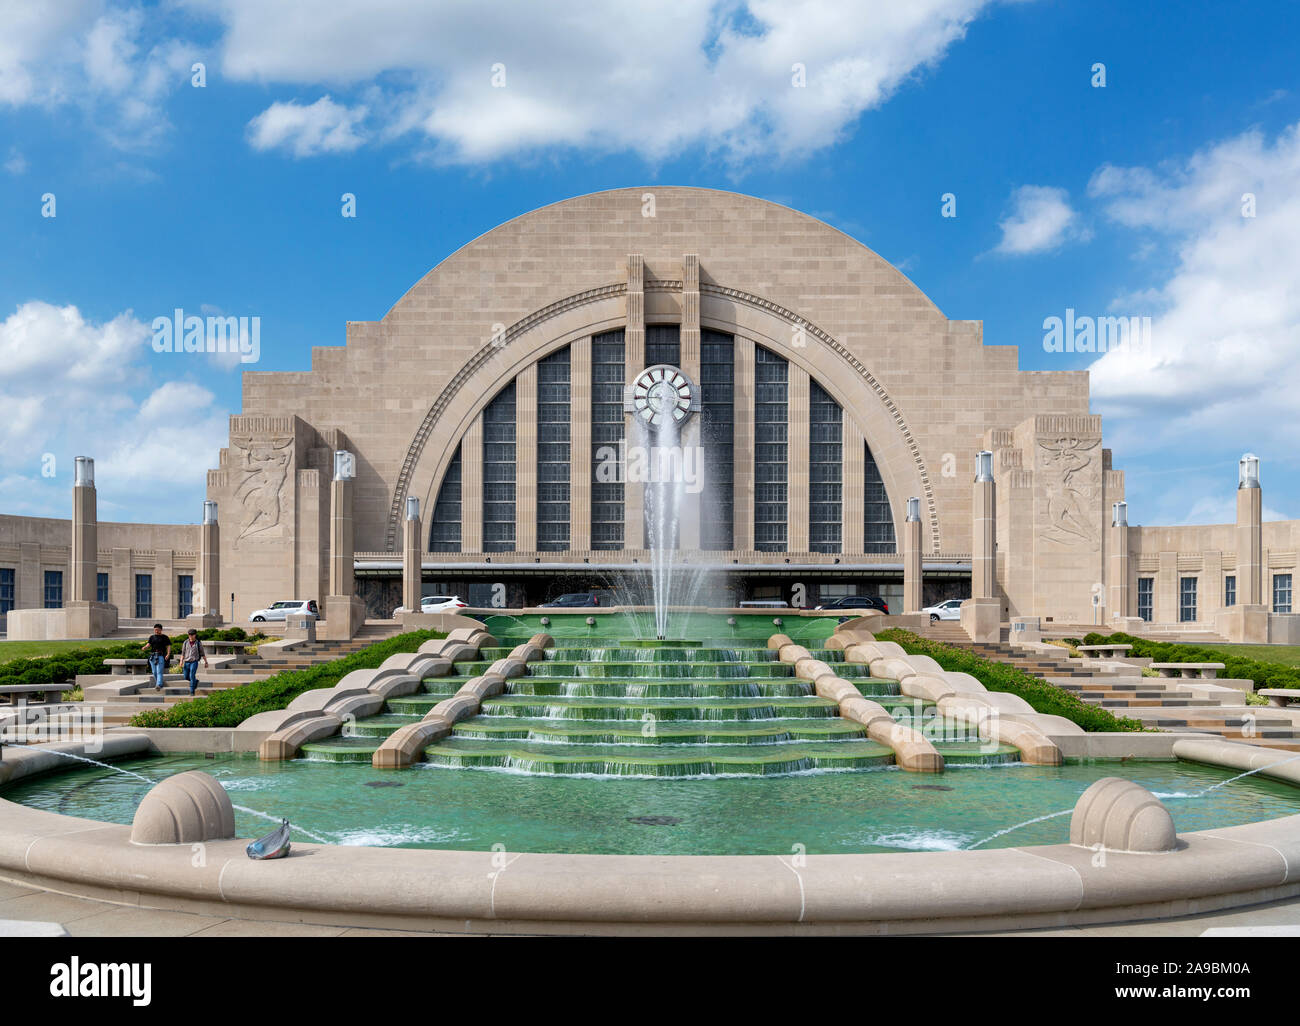 La Union Station, Cincinnati, Ohio, Stati Uniti d'America. La stazione, un raffinato esempio di architettura Art Deco, è anche un museo centro. Foto Stock